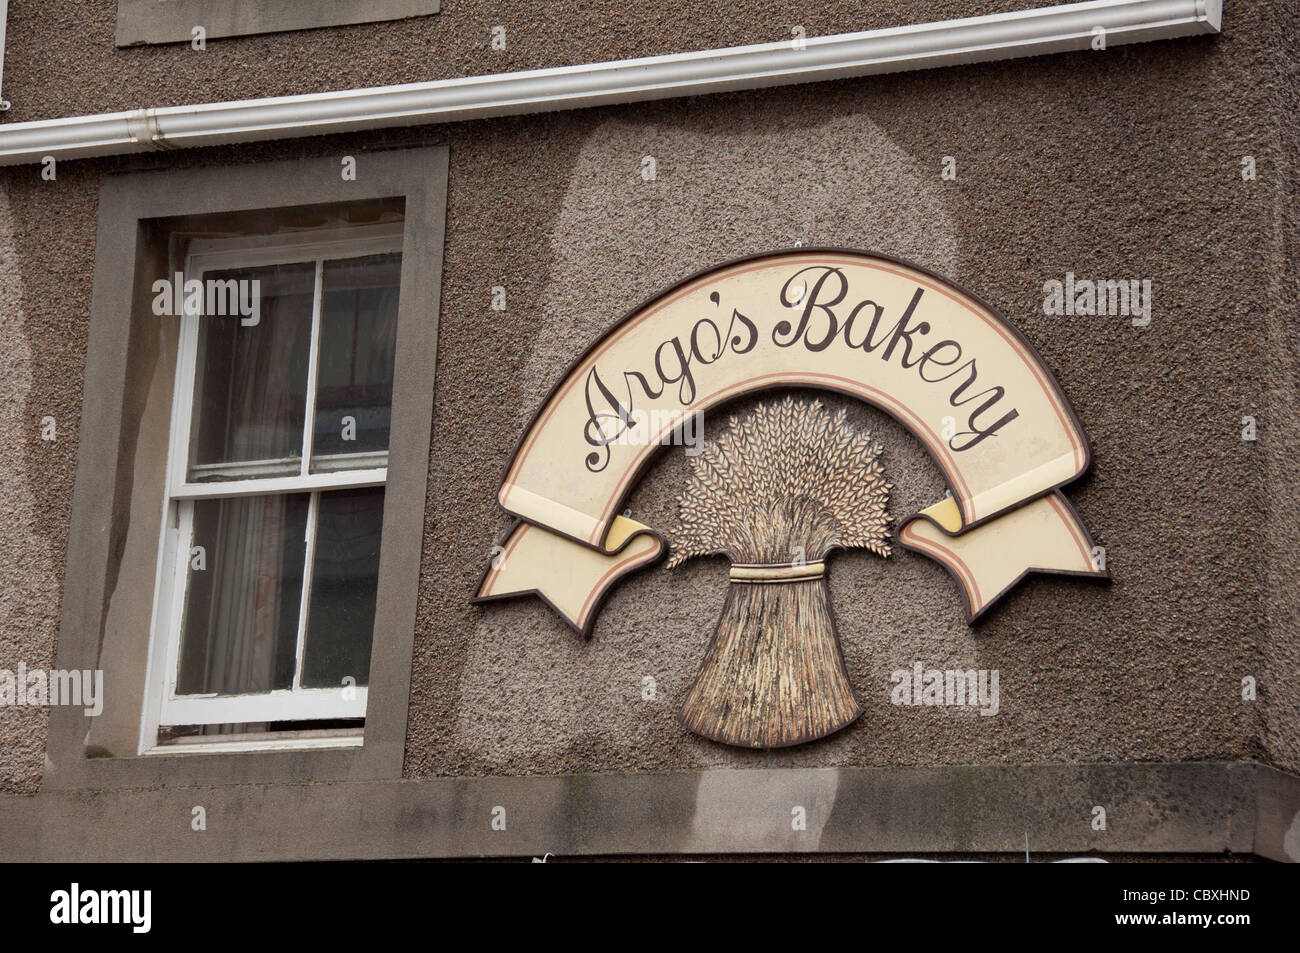 La Scozia, isole Orcadi, continentale. La città capitale di stromness. argo's Bakery. Foto Stock